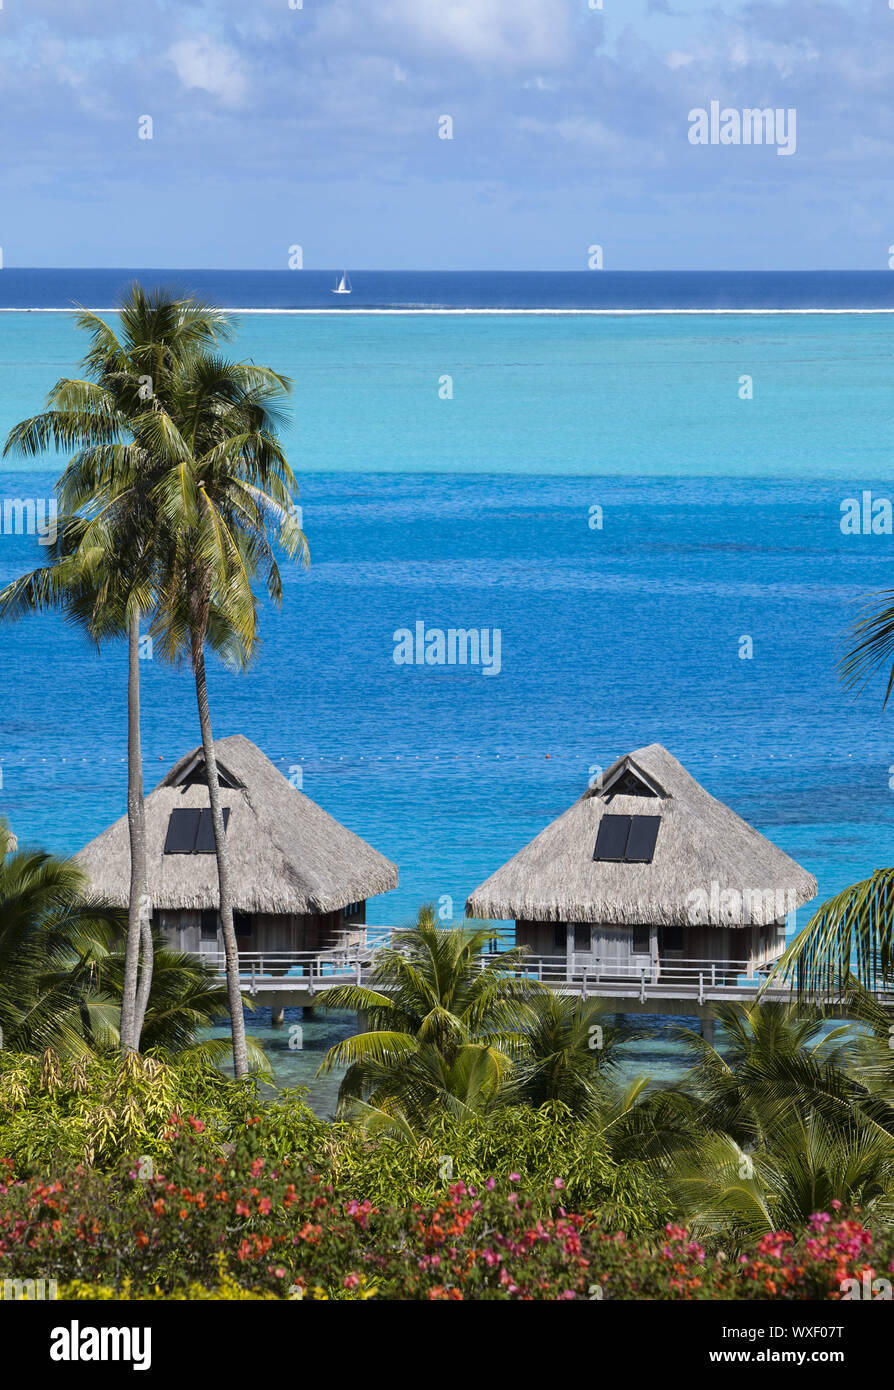 Blaue Lagune der Insel Bora Bora, Französisch-polynesien. Top Blick auf Palmen, traditionelle Hütten über ... Stockfoto